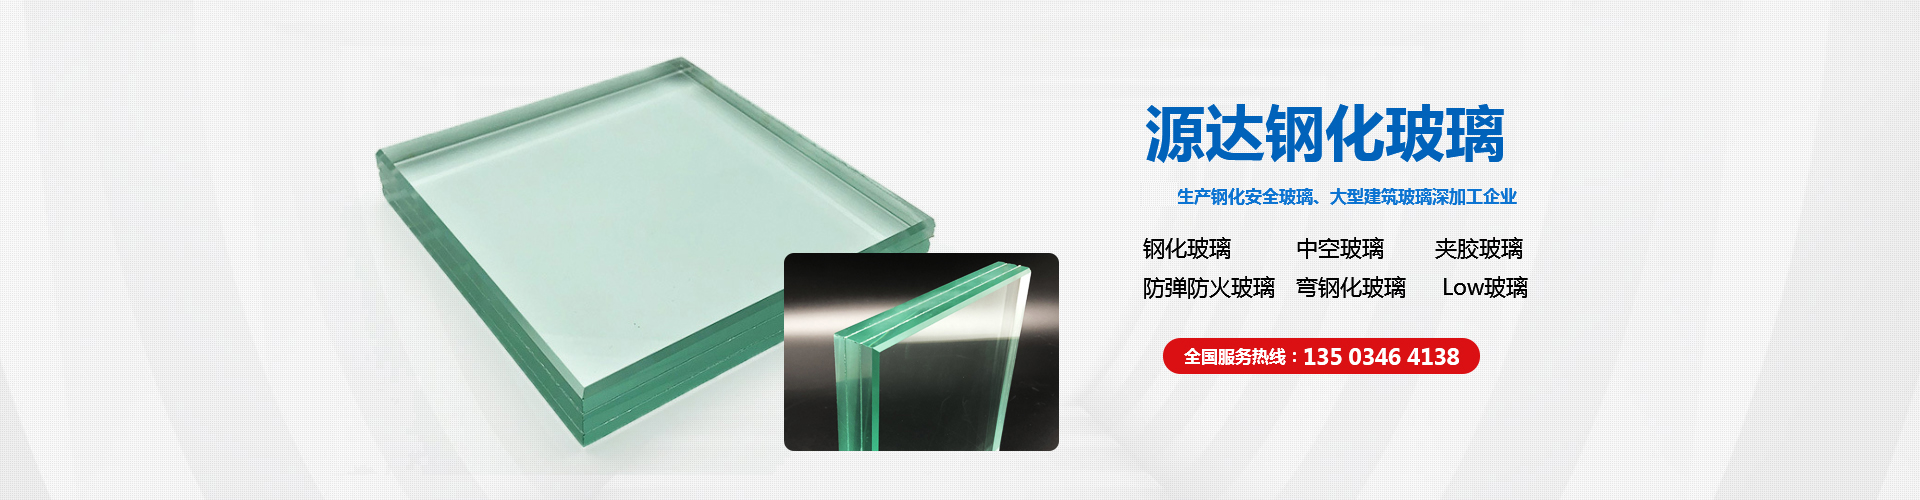 安陽市源達鋼化玻璃有限公司